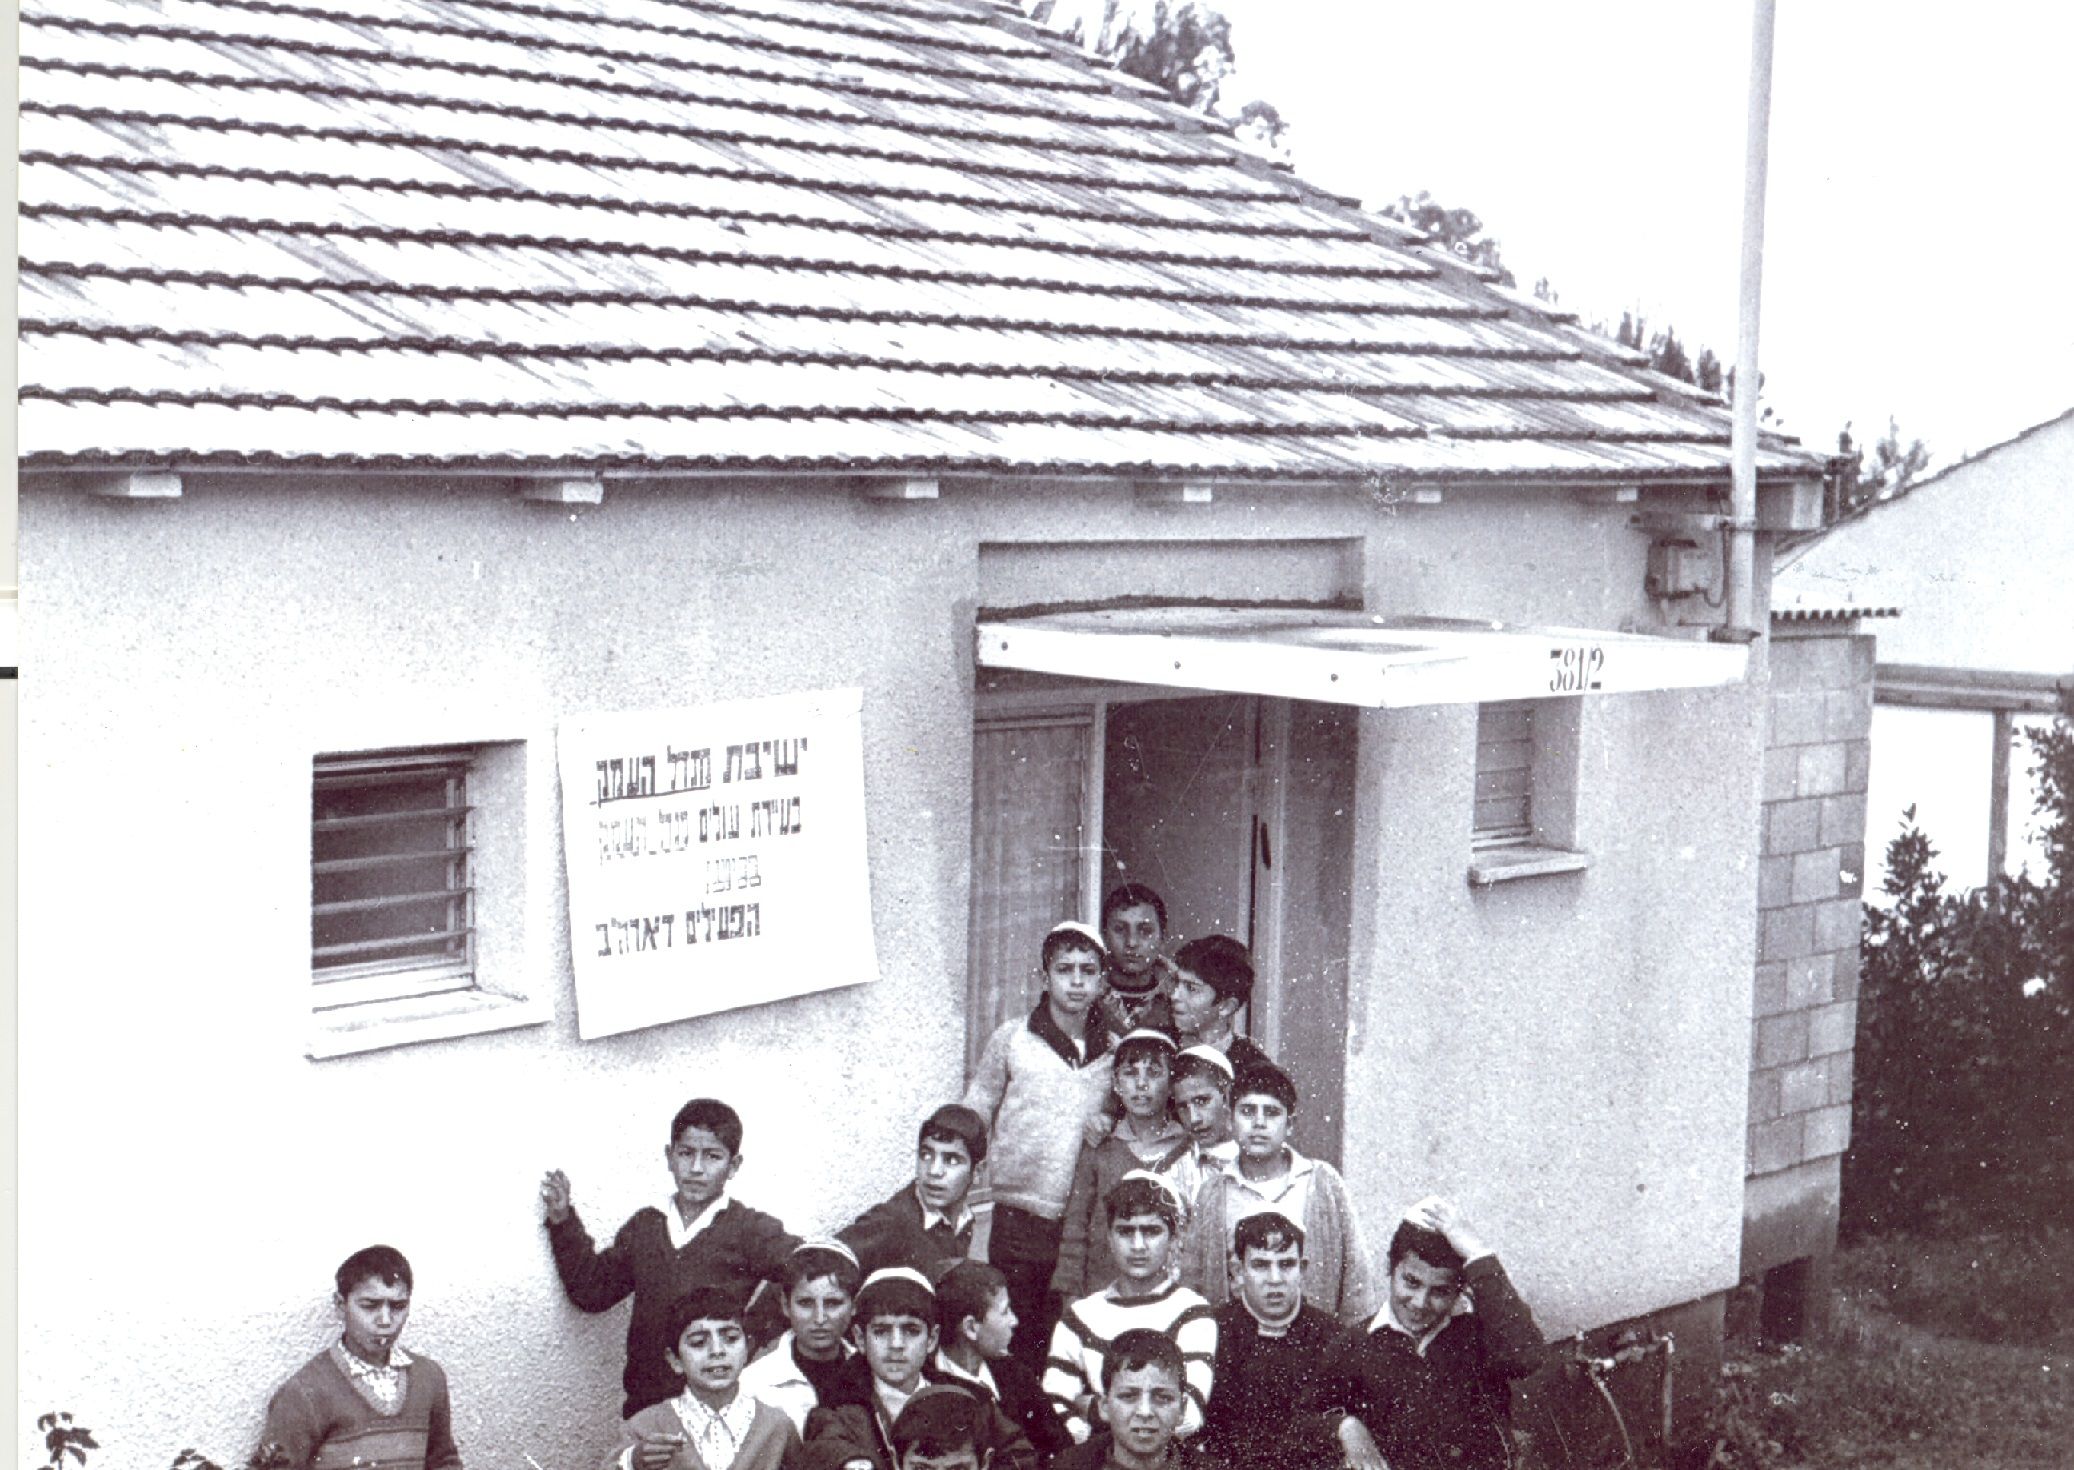 הכיתה הראשונה. מגדל העמק 1972 (צילום: רונן מנשה)